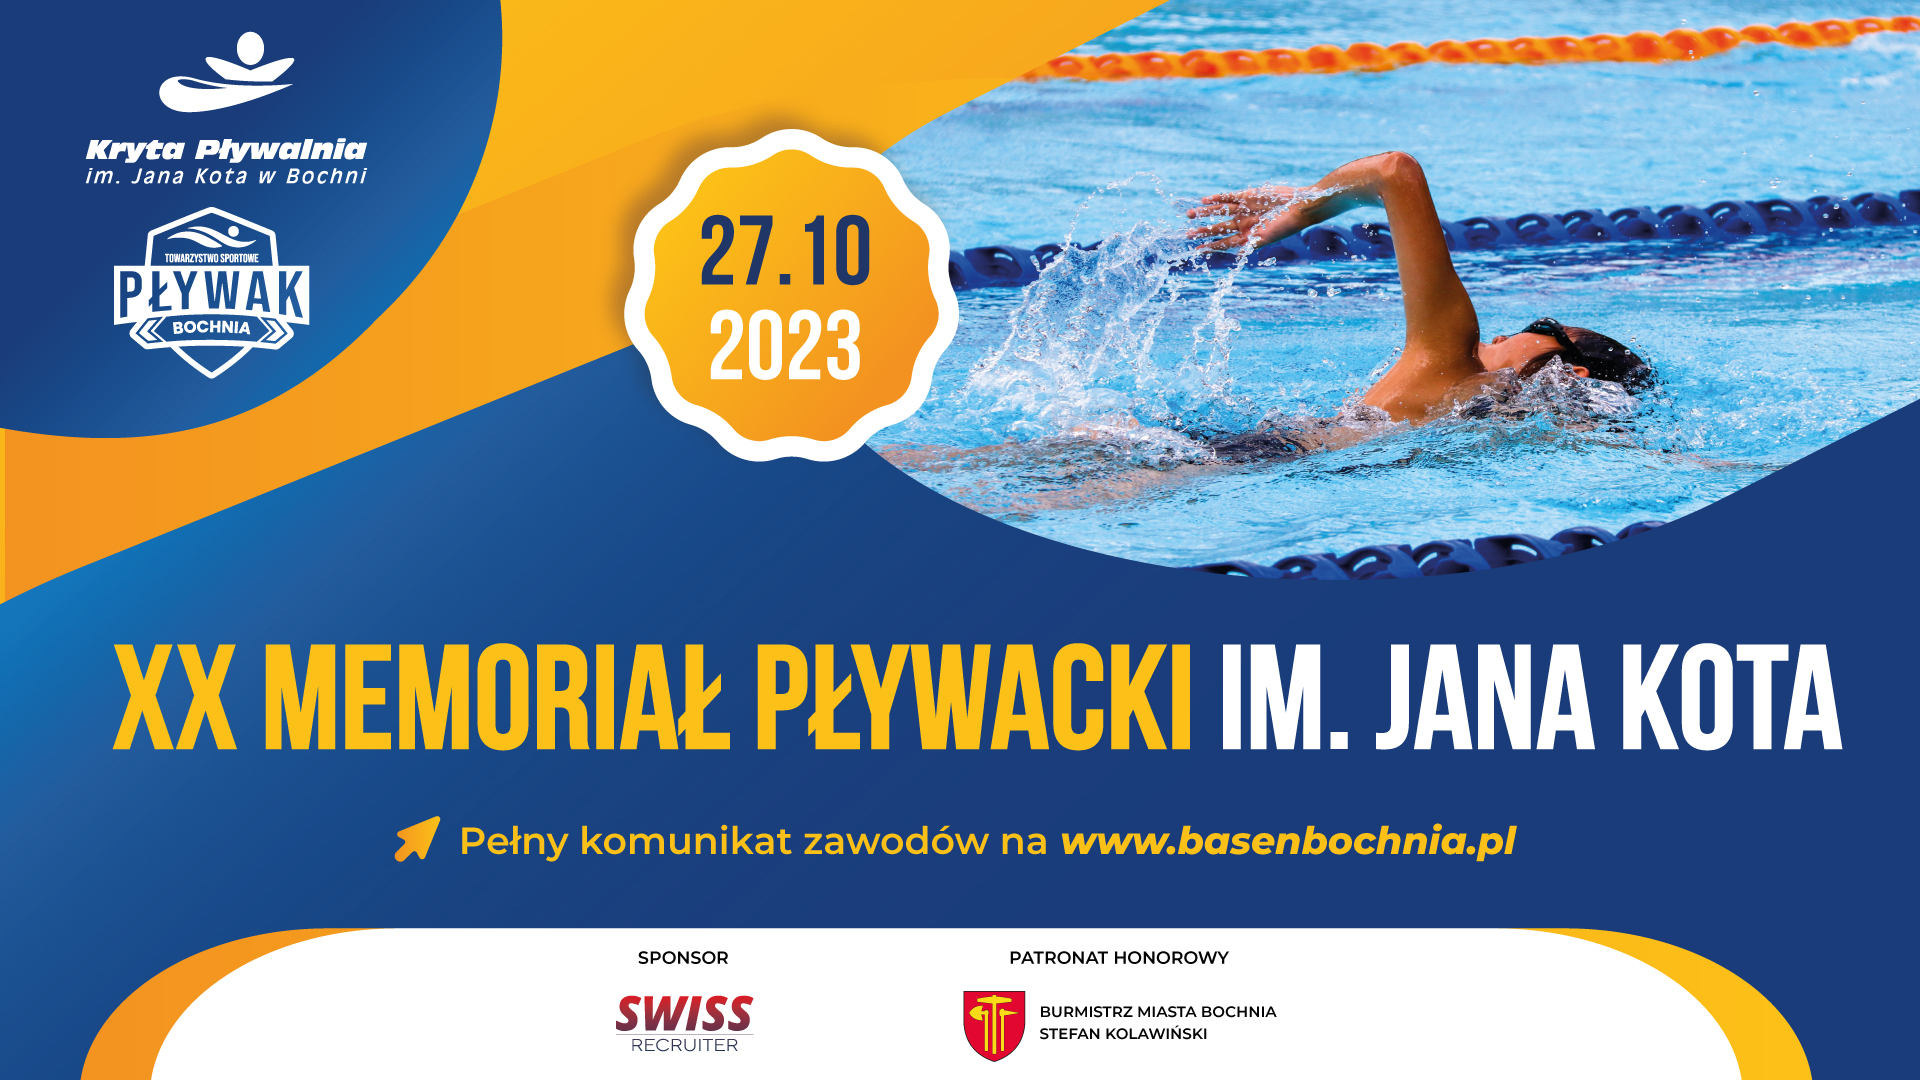 XX Jubileuszowy Memoriał Pływacki im. Jana Kota